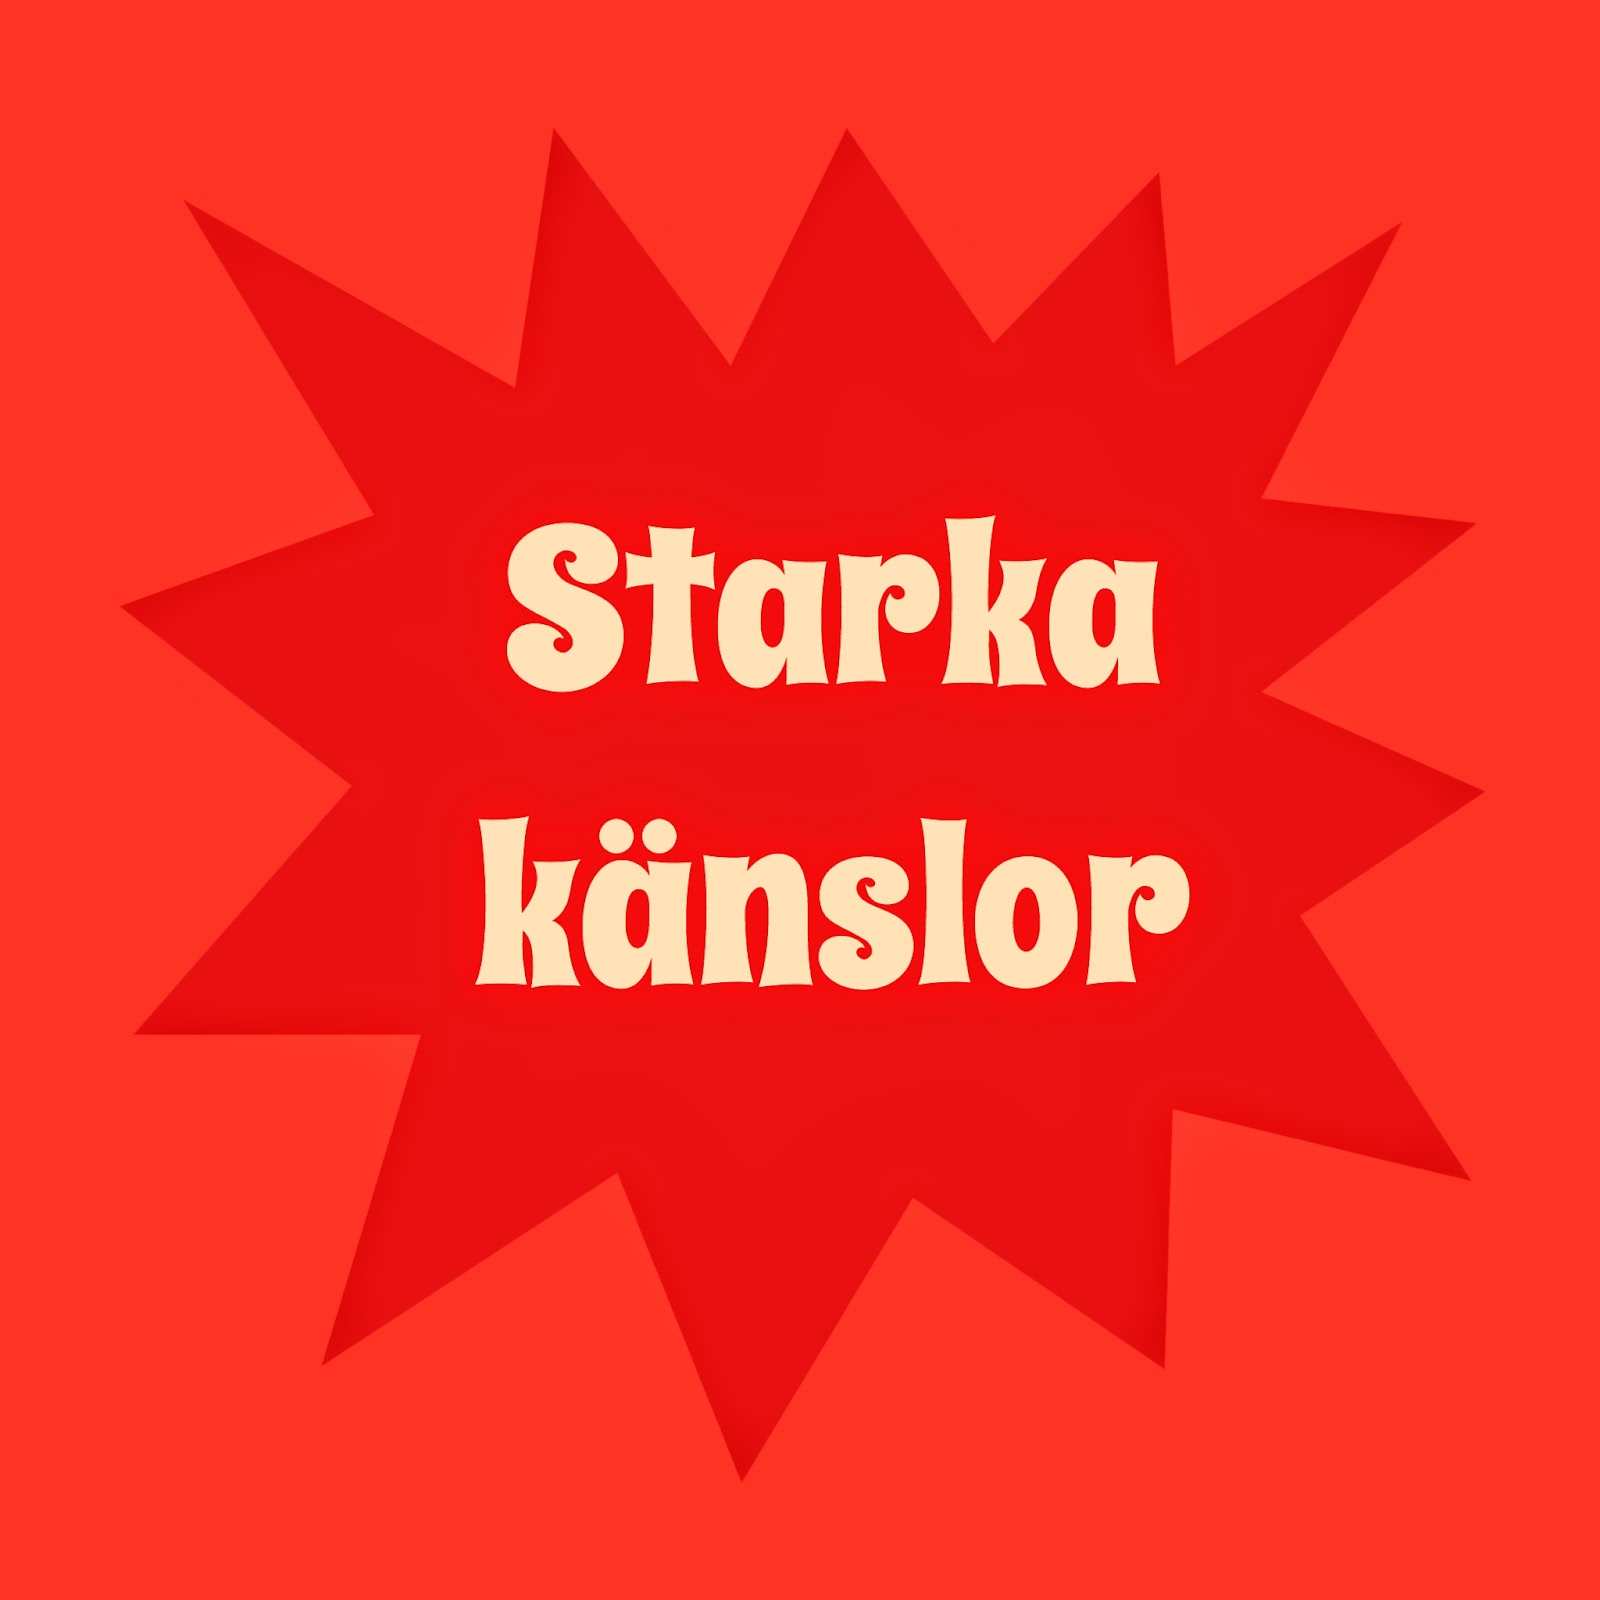 http://bokhjulet.blogspot.se/p/starka-kanslor.html